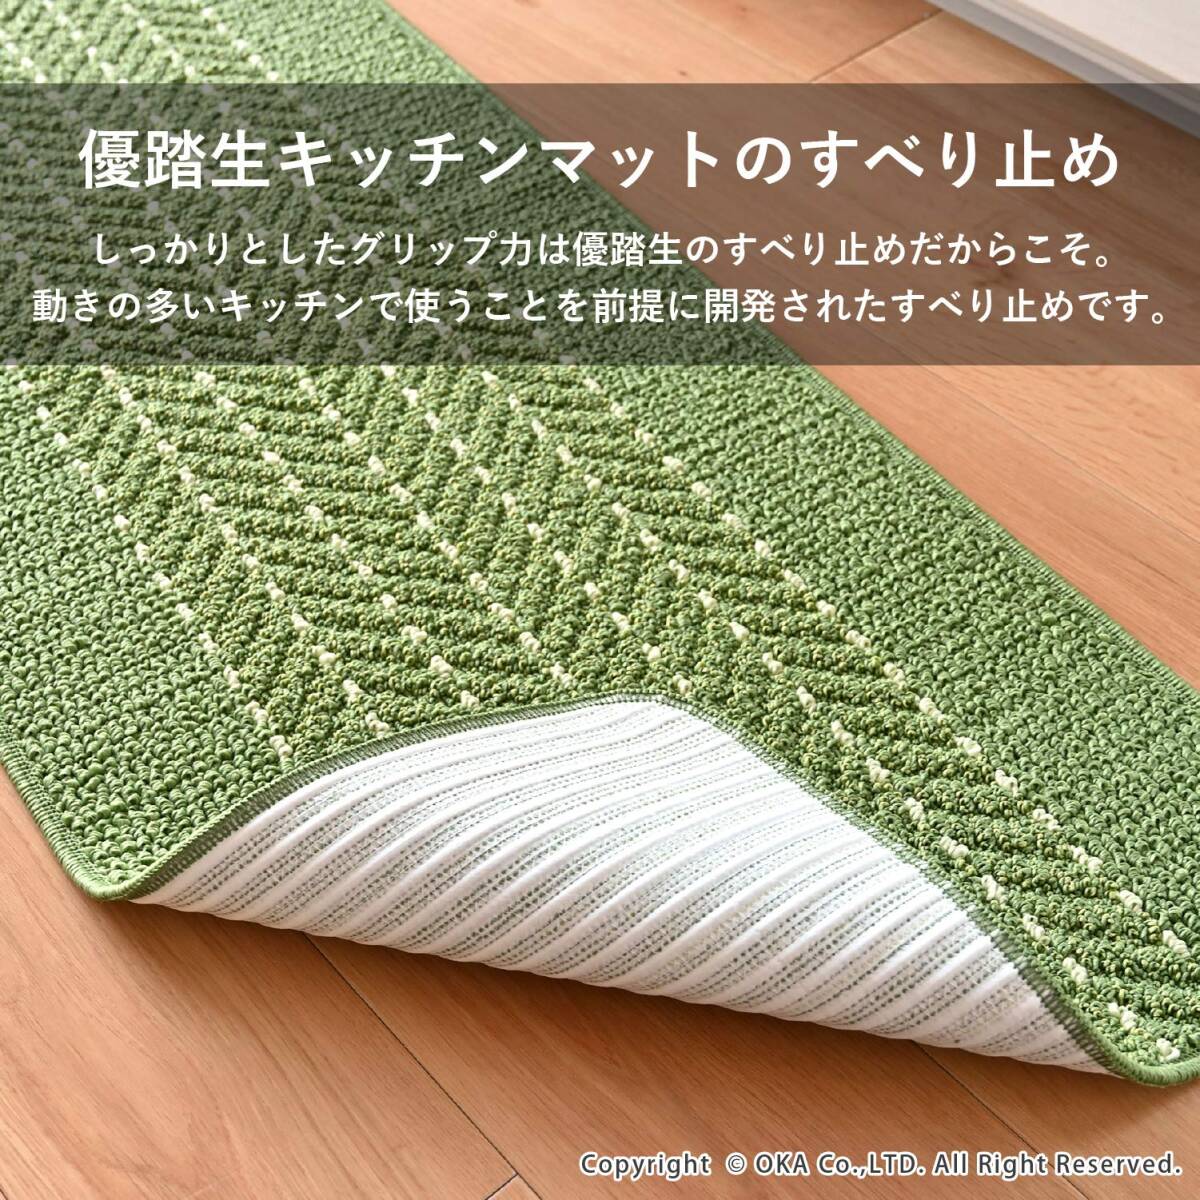 オカ(OKA) 優踏生 洗いやすいキッチンマットヘリンボン 約45cm×252cm グリーン (すべらない 日本製 北欧)_画像4